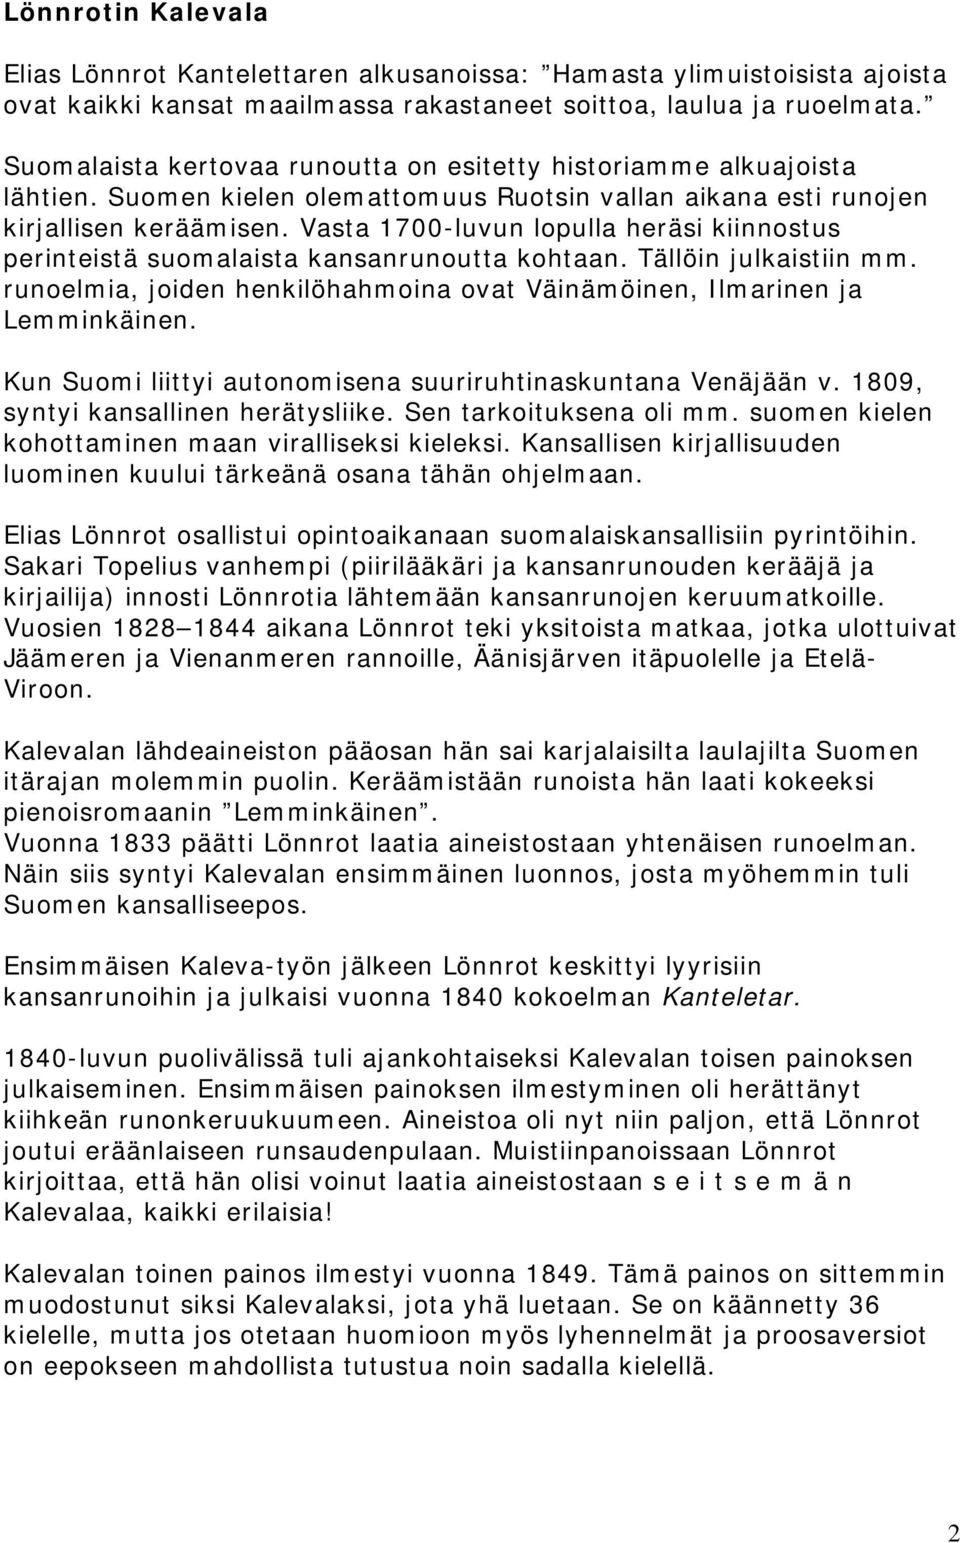 Vasta 1700-luvun lopulla heräsi kiinnostus perinteistä suomalaista kansanrunoutta kohtaan. Tällöin julkaistiin mm. runoelmia, joiden henkilöhahmoina ovat Väinämöinen, Ilmarinen ja Lemminkäinen.